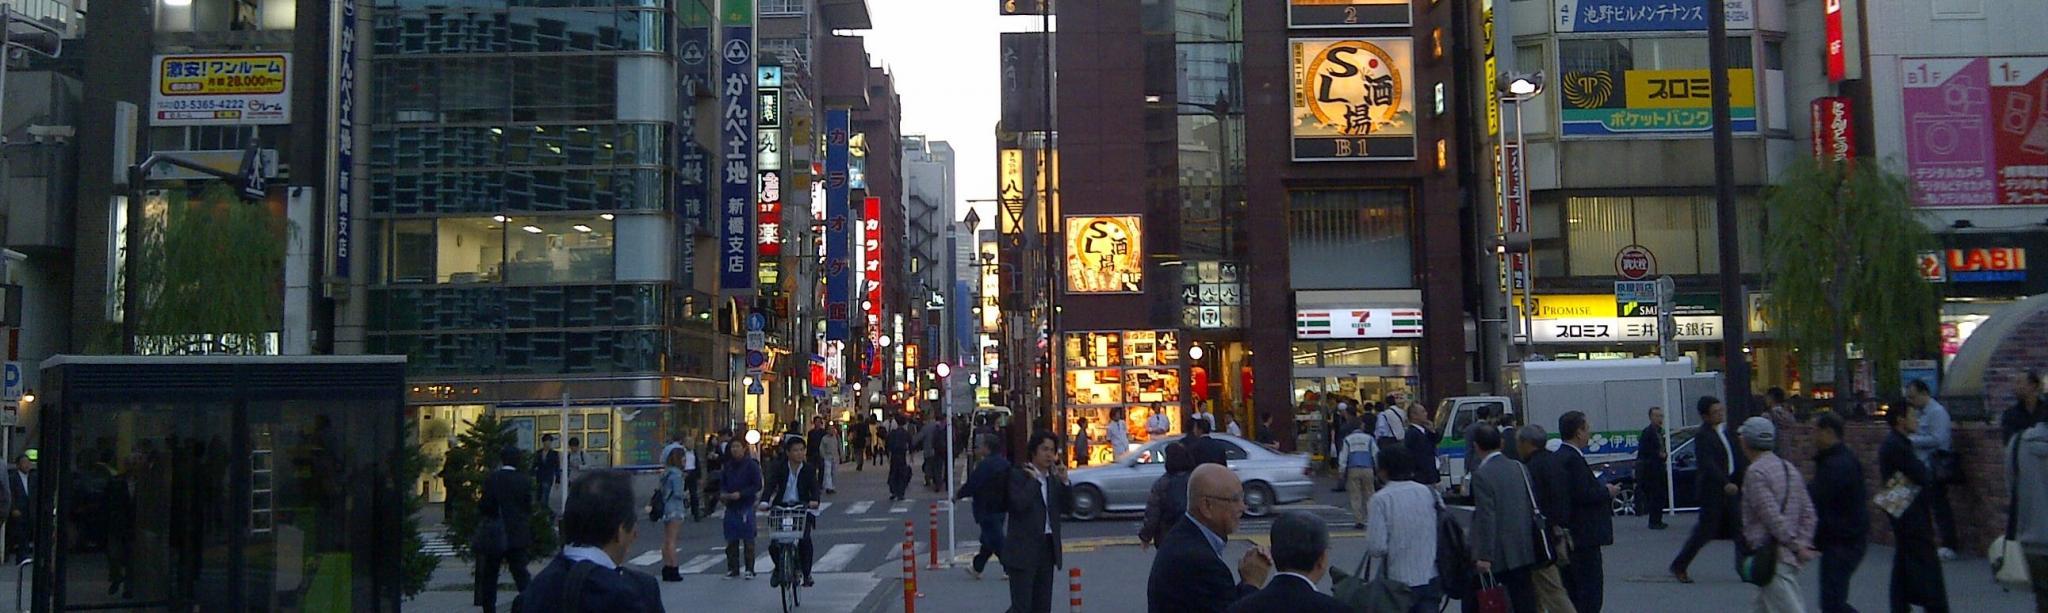 Busy street in Japan